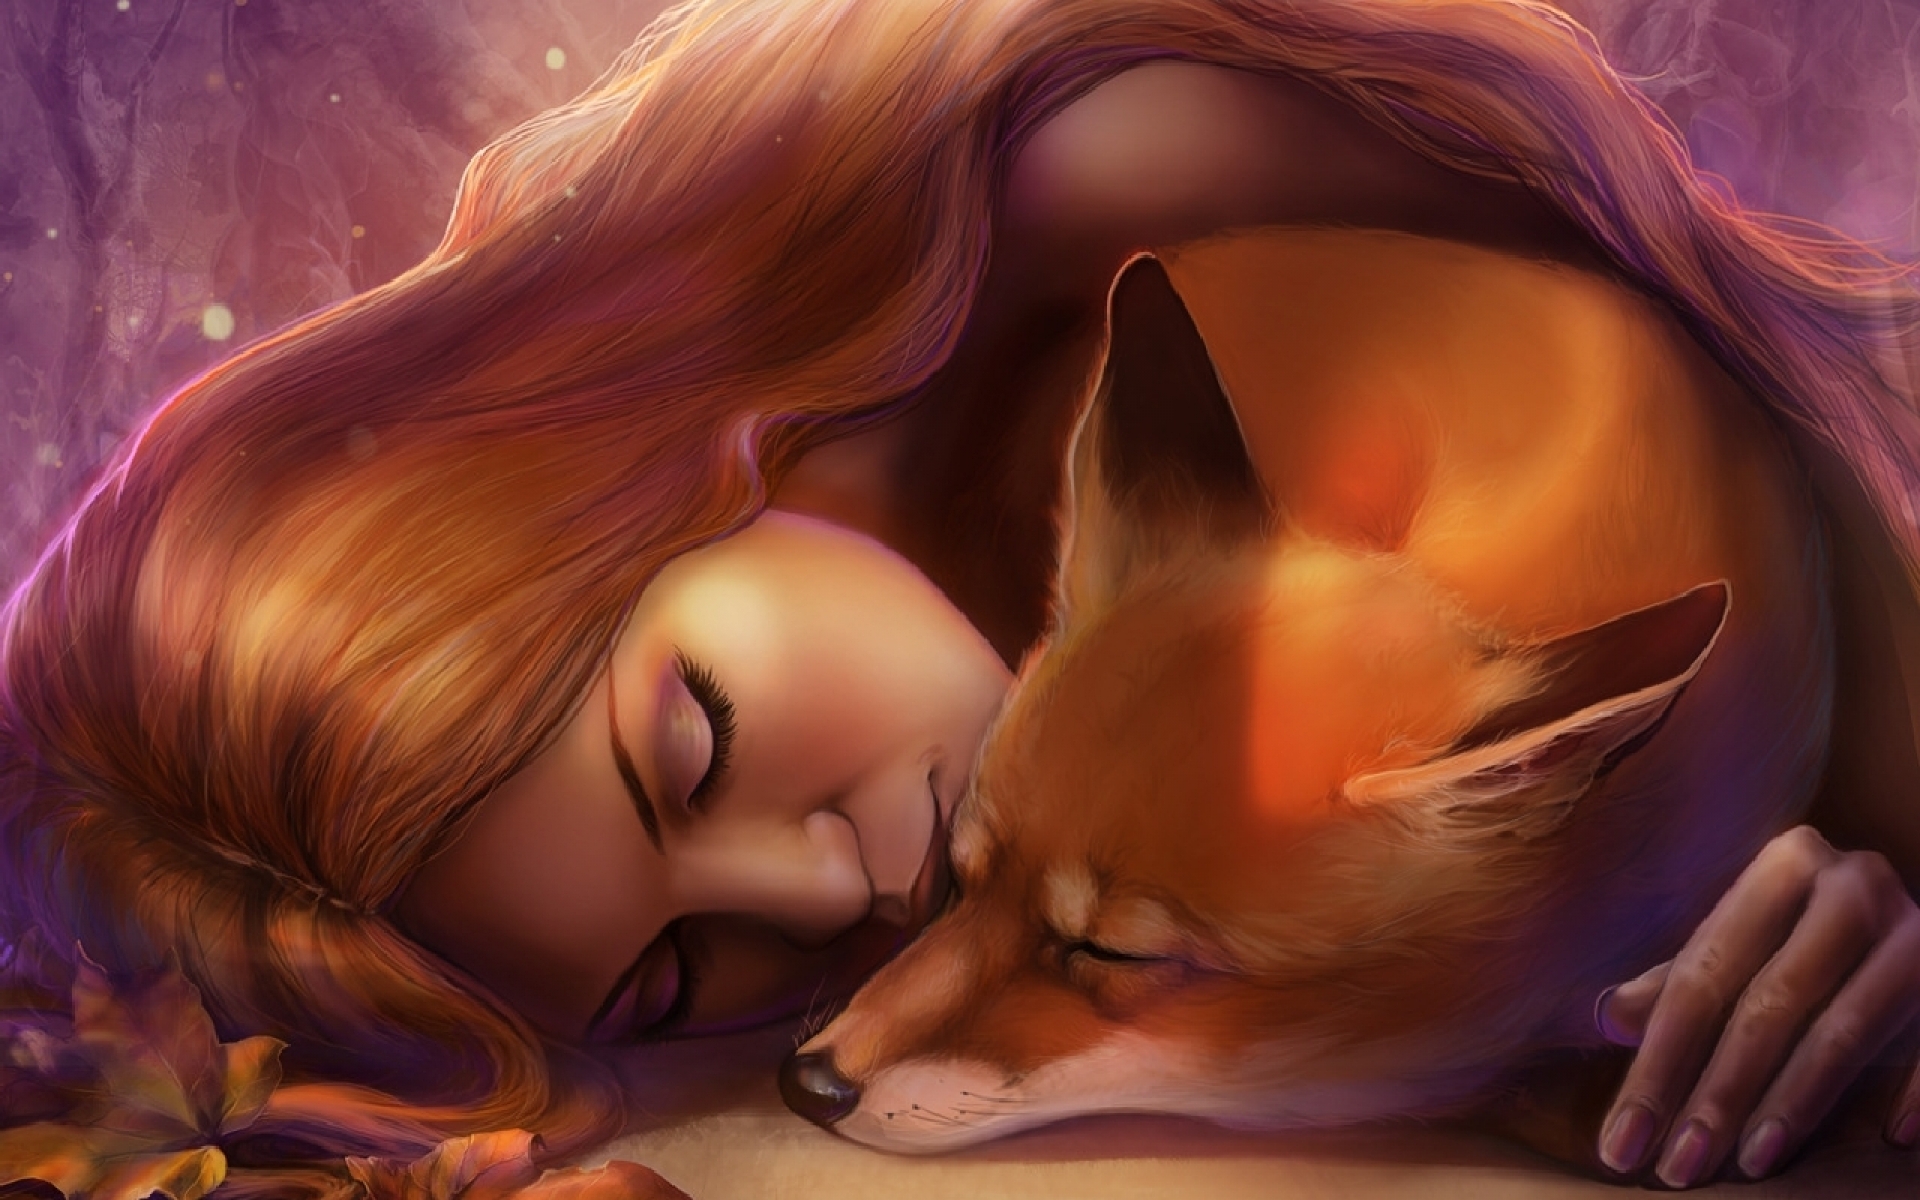 Woman Fox Devotion Sleeping wallpaper. Woman Fox Devotion Sleeping